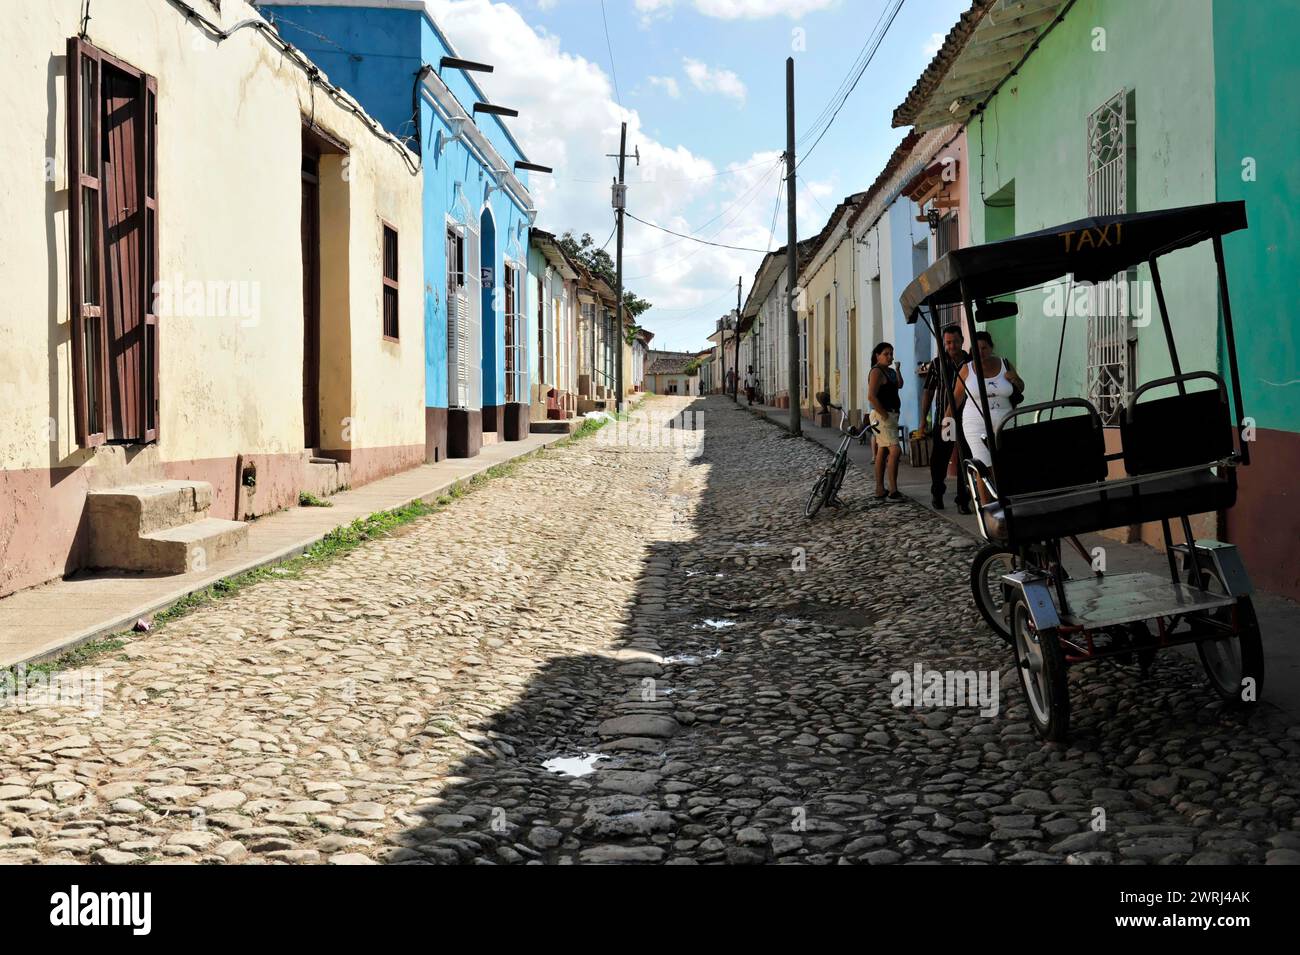 Vista di una strada acciottolata con la storica architettura cubana e di un taxi, Trinidad, Cuba, America centrale Foto Stock